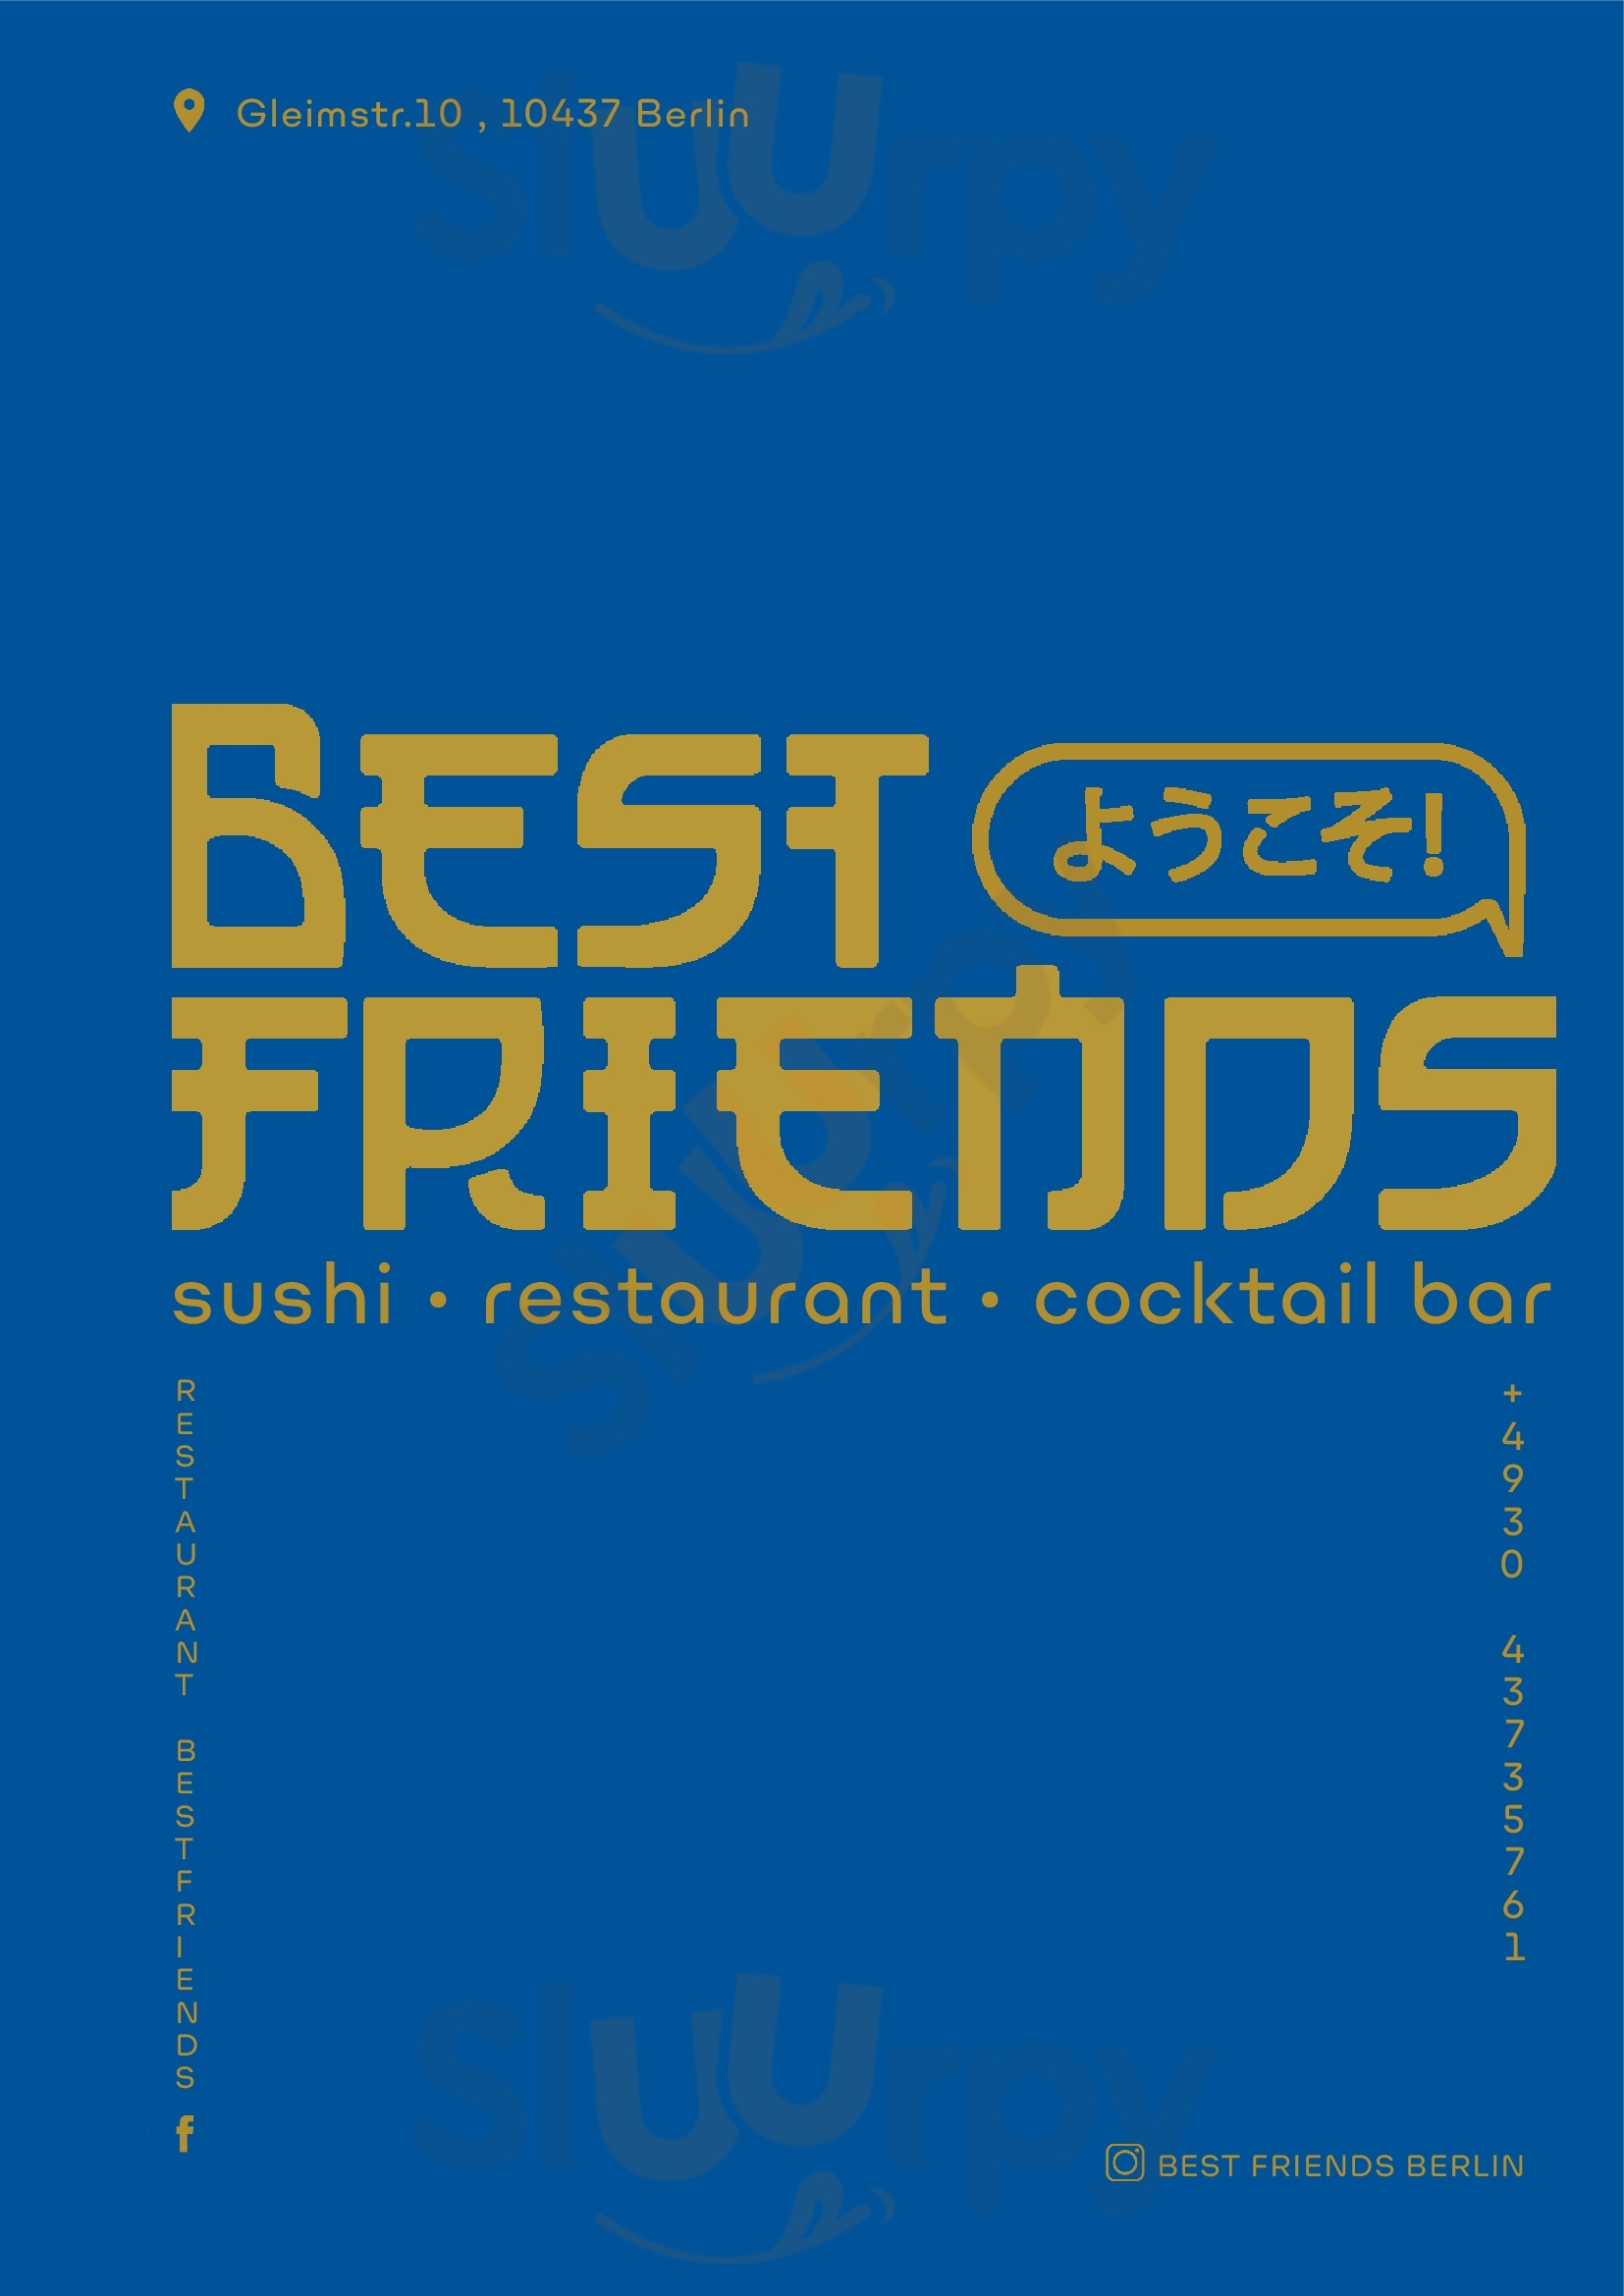 Restaurant Best Friends Berlin Menu - 1